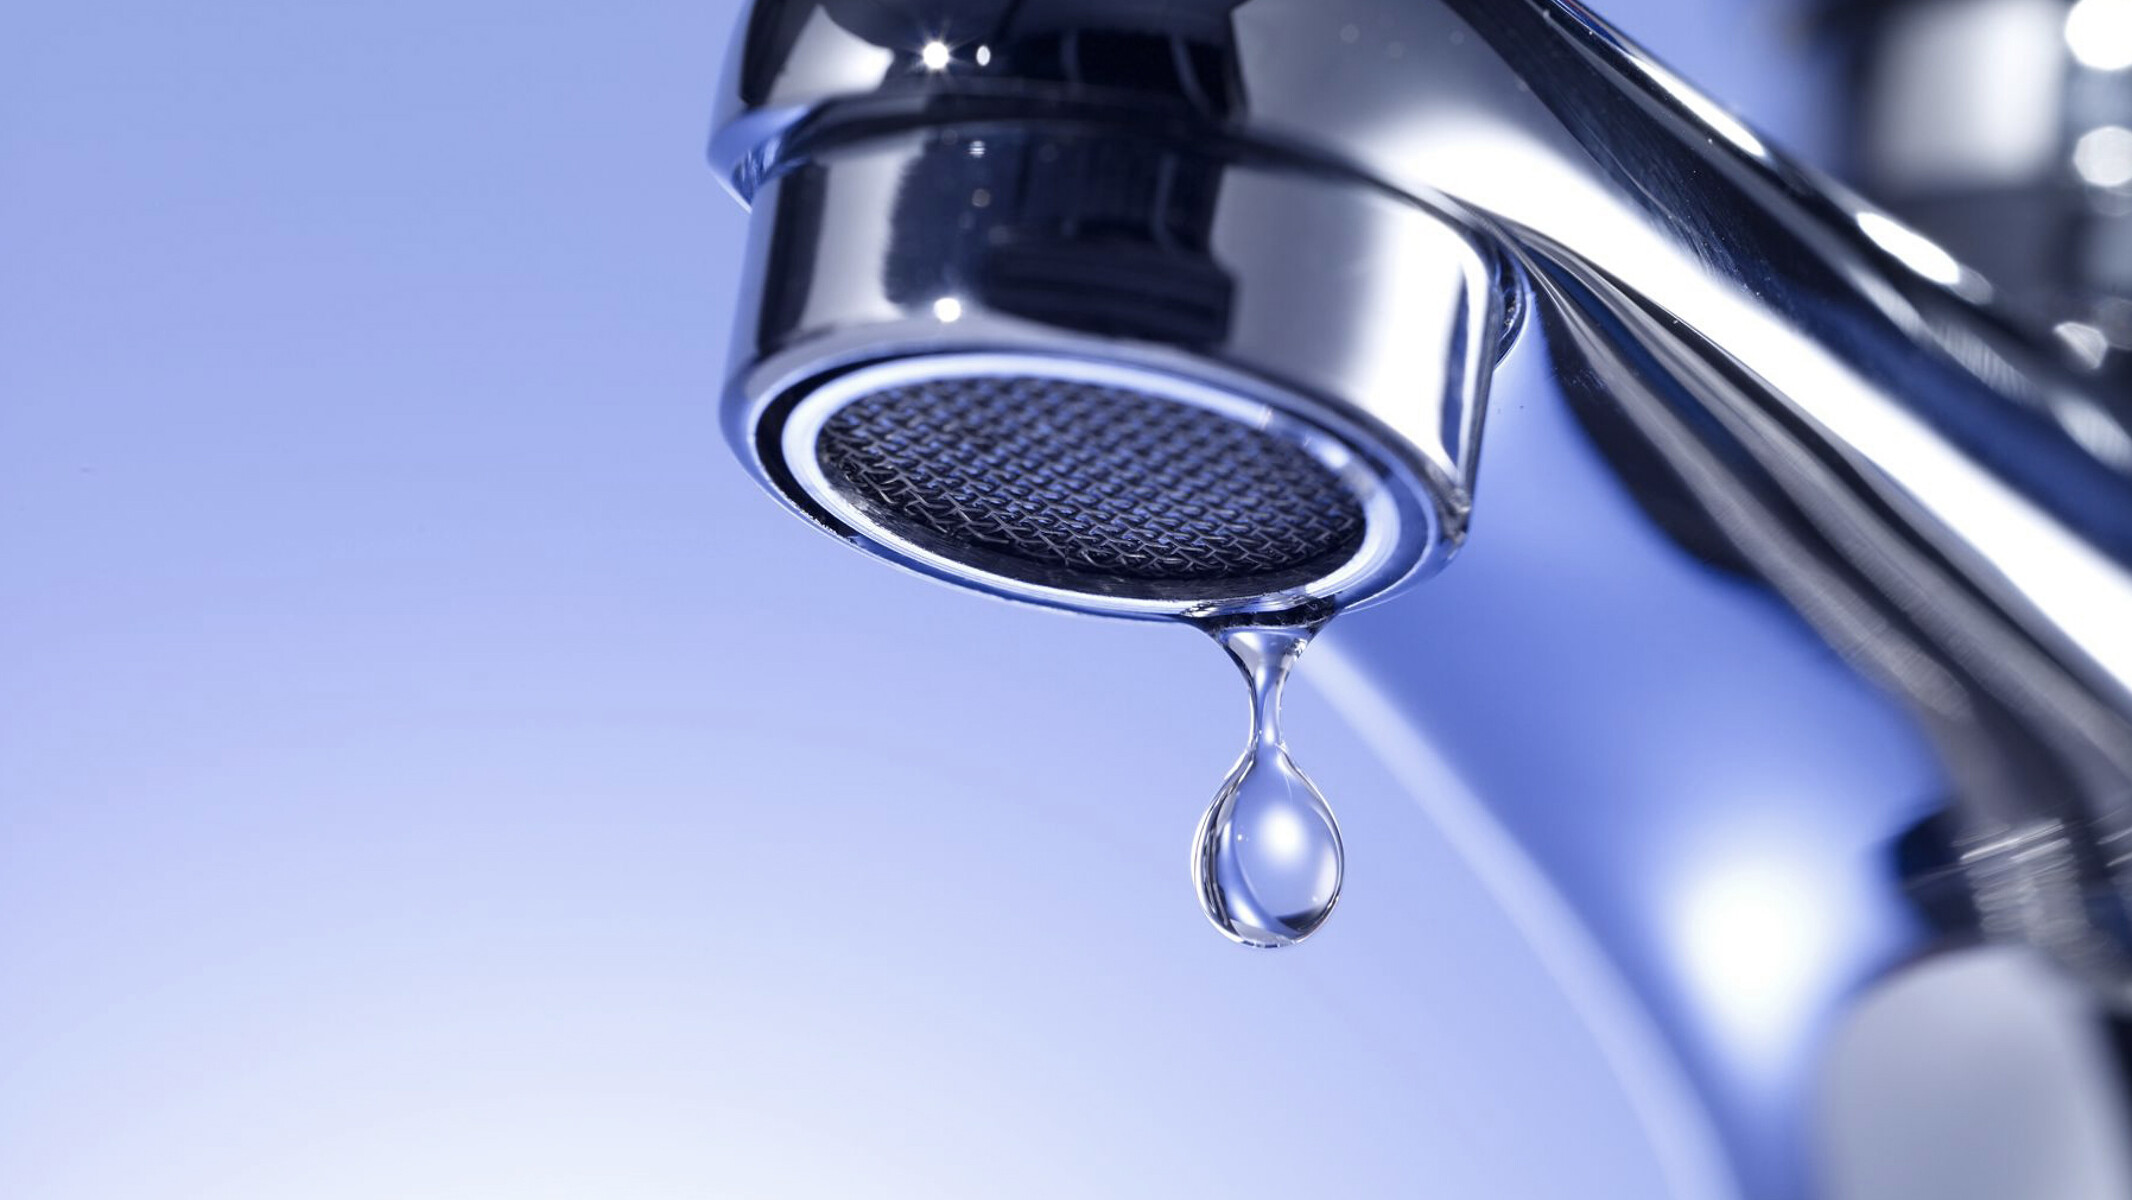 Slavina koja curi. Od kućne distribucije vode do kompleksnih uređaja za povećanje tlaka – KSB tehnologija za opskrbu vodom